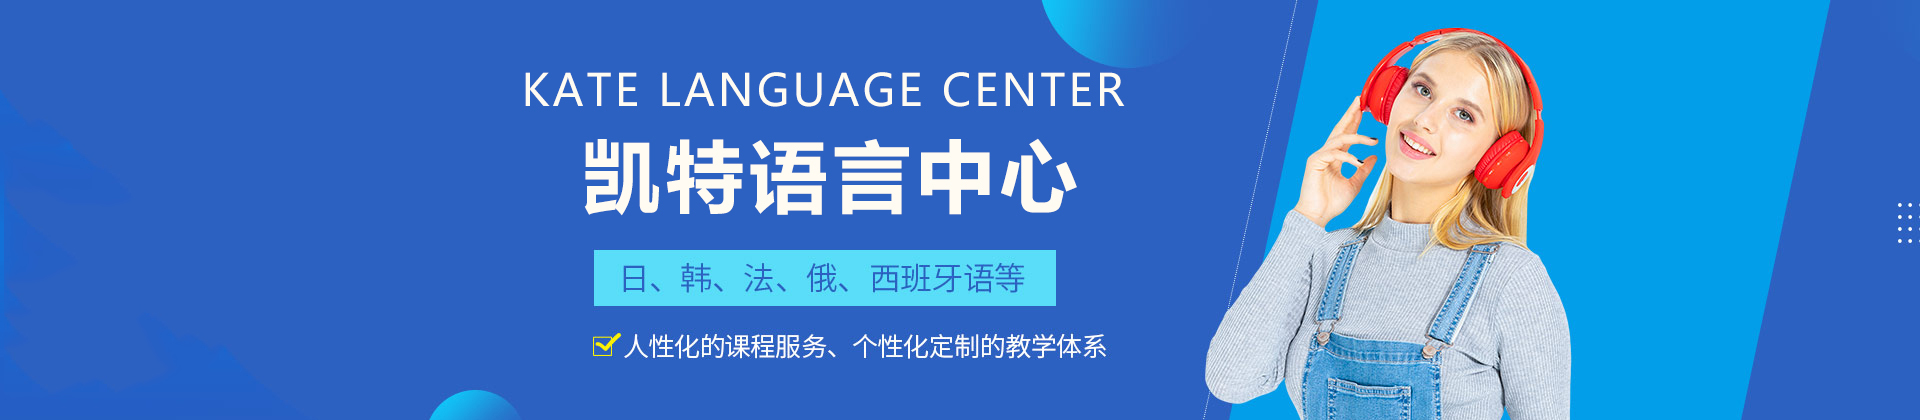 天津凯特语言中心